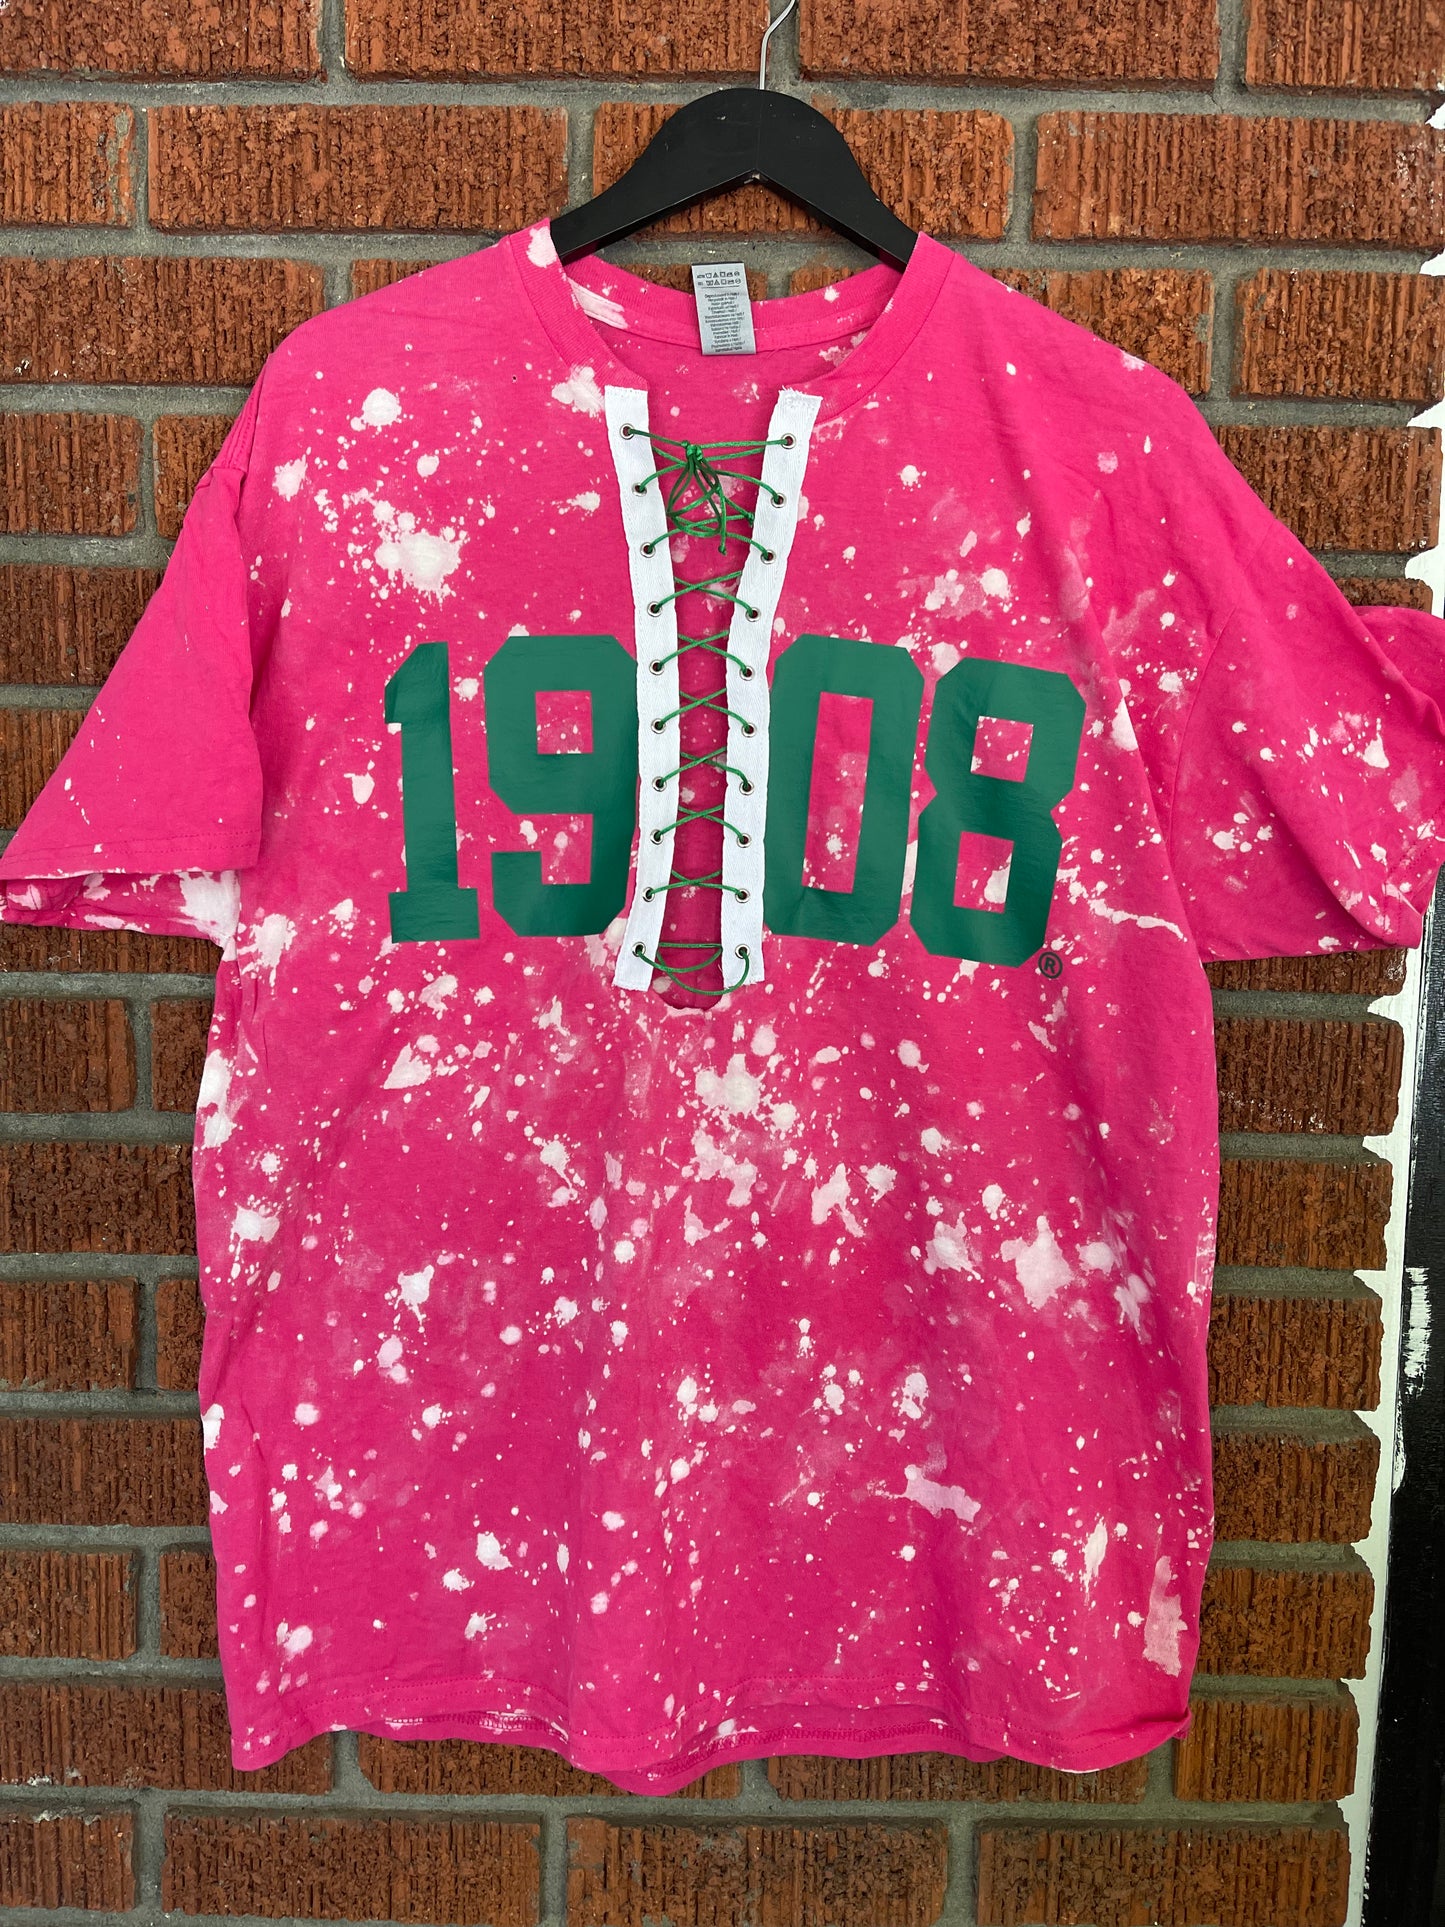 The Handmade 1908 Lace Up T-Shirt - [CCL Designs] - AKA Alpha Kappa Alpha Pink and Green handmade hand bleach tie dye 1908 tee shirt t-shirt